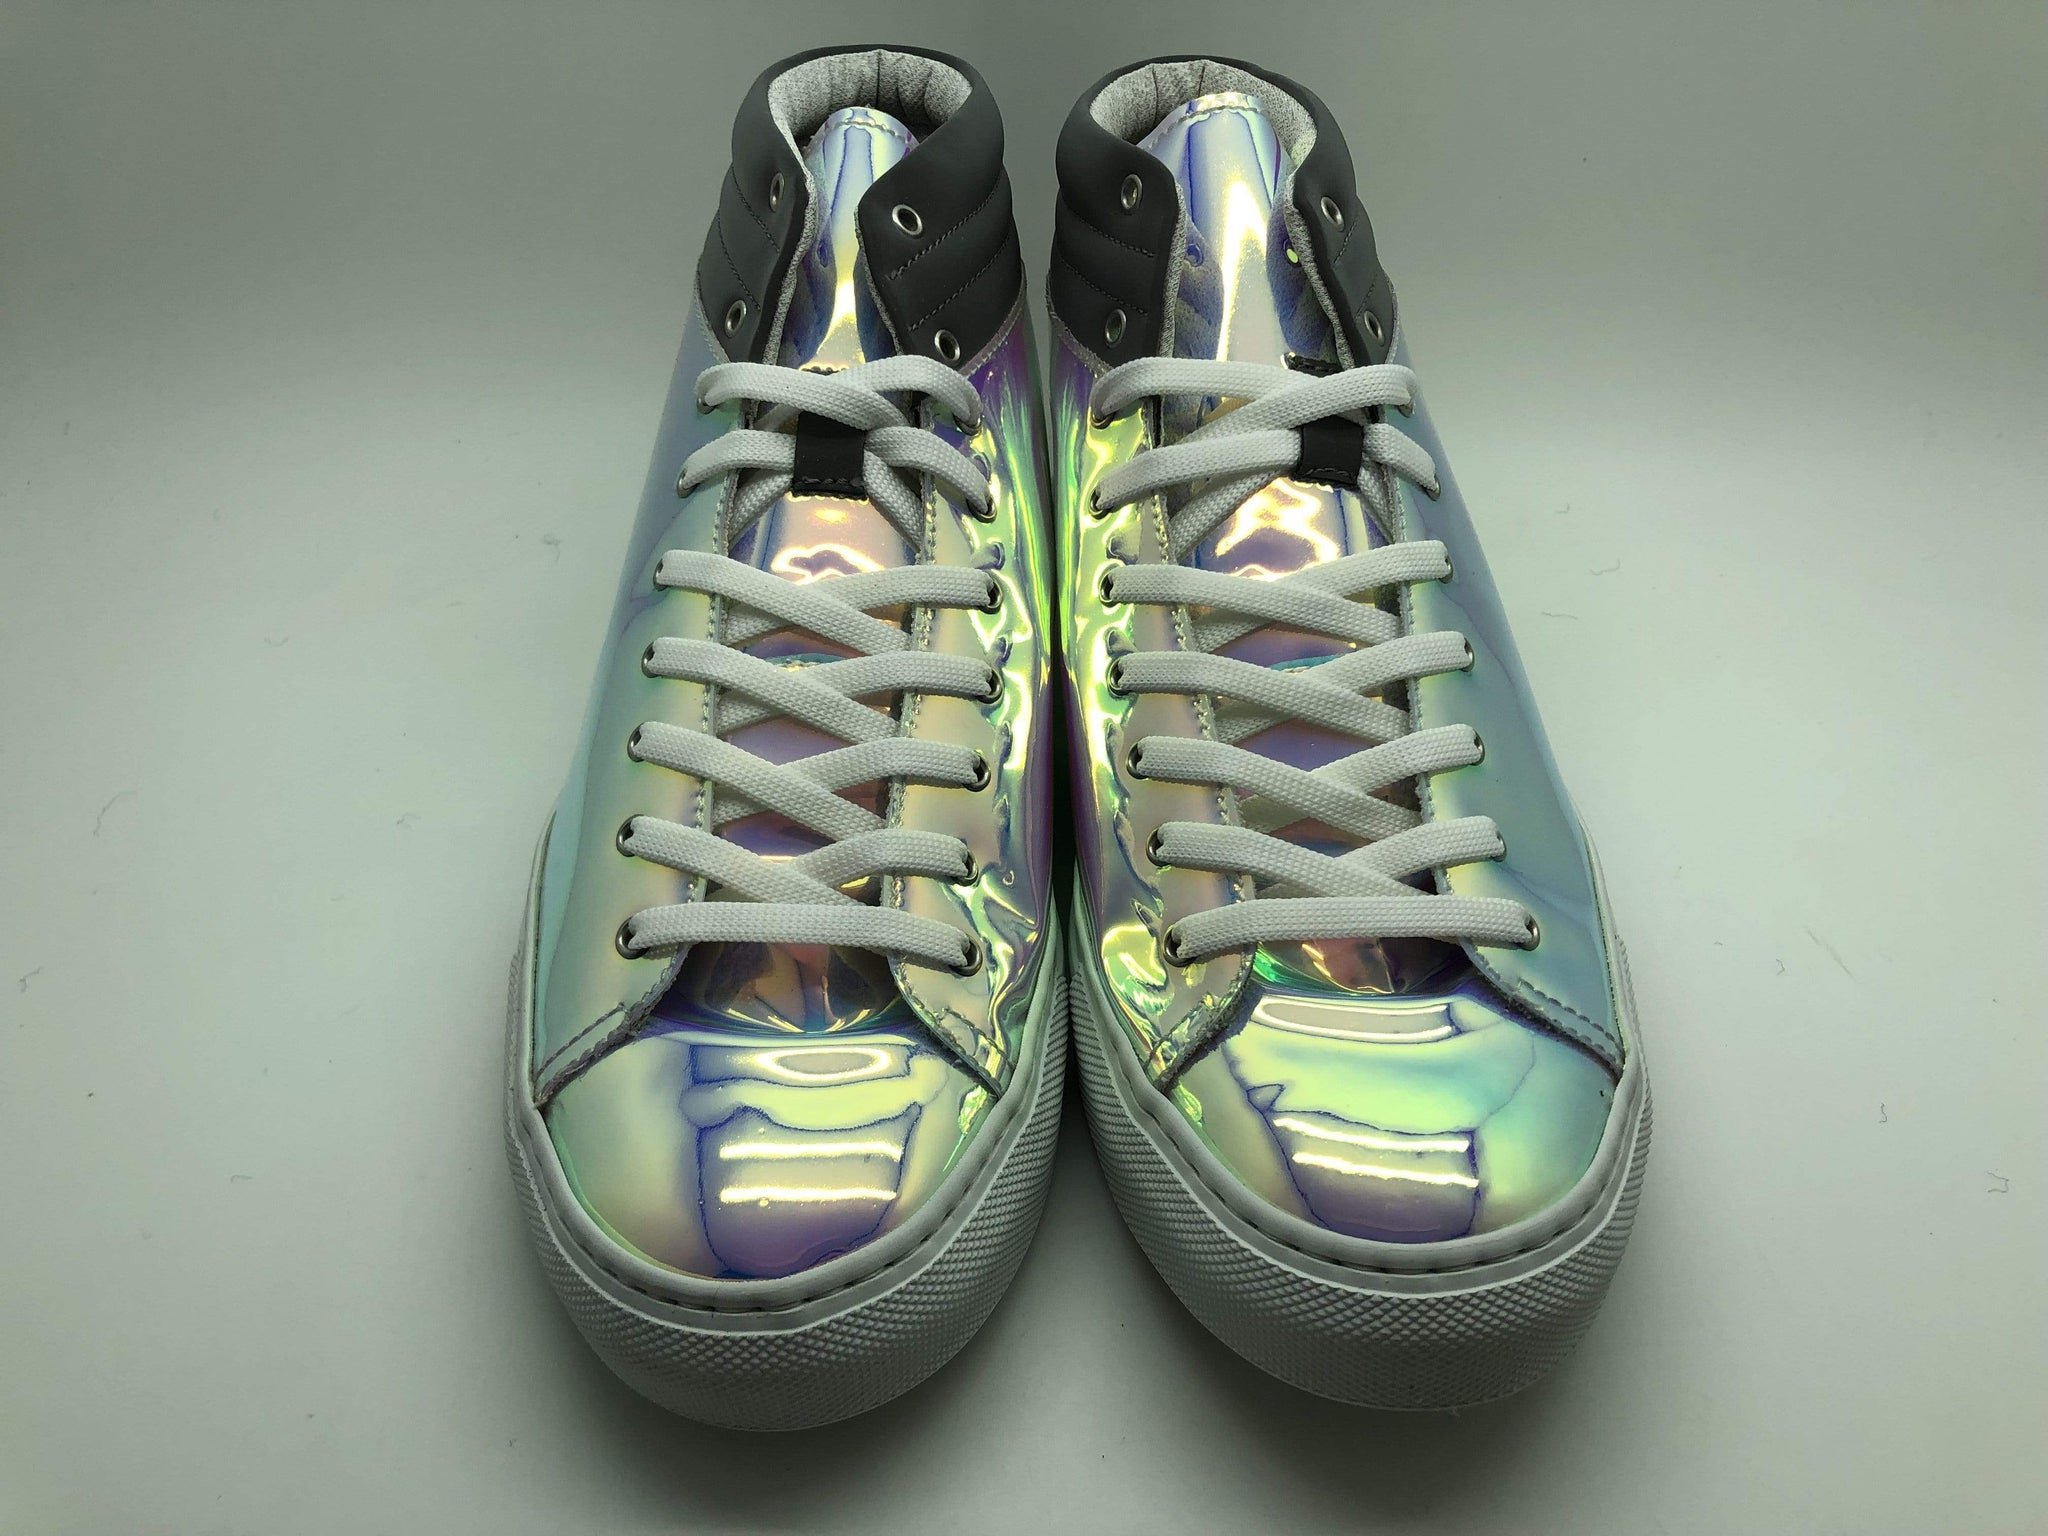 Zapatillas de deporte elegantes en sintético patentado ultra iridiscente.